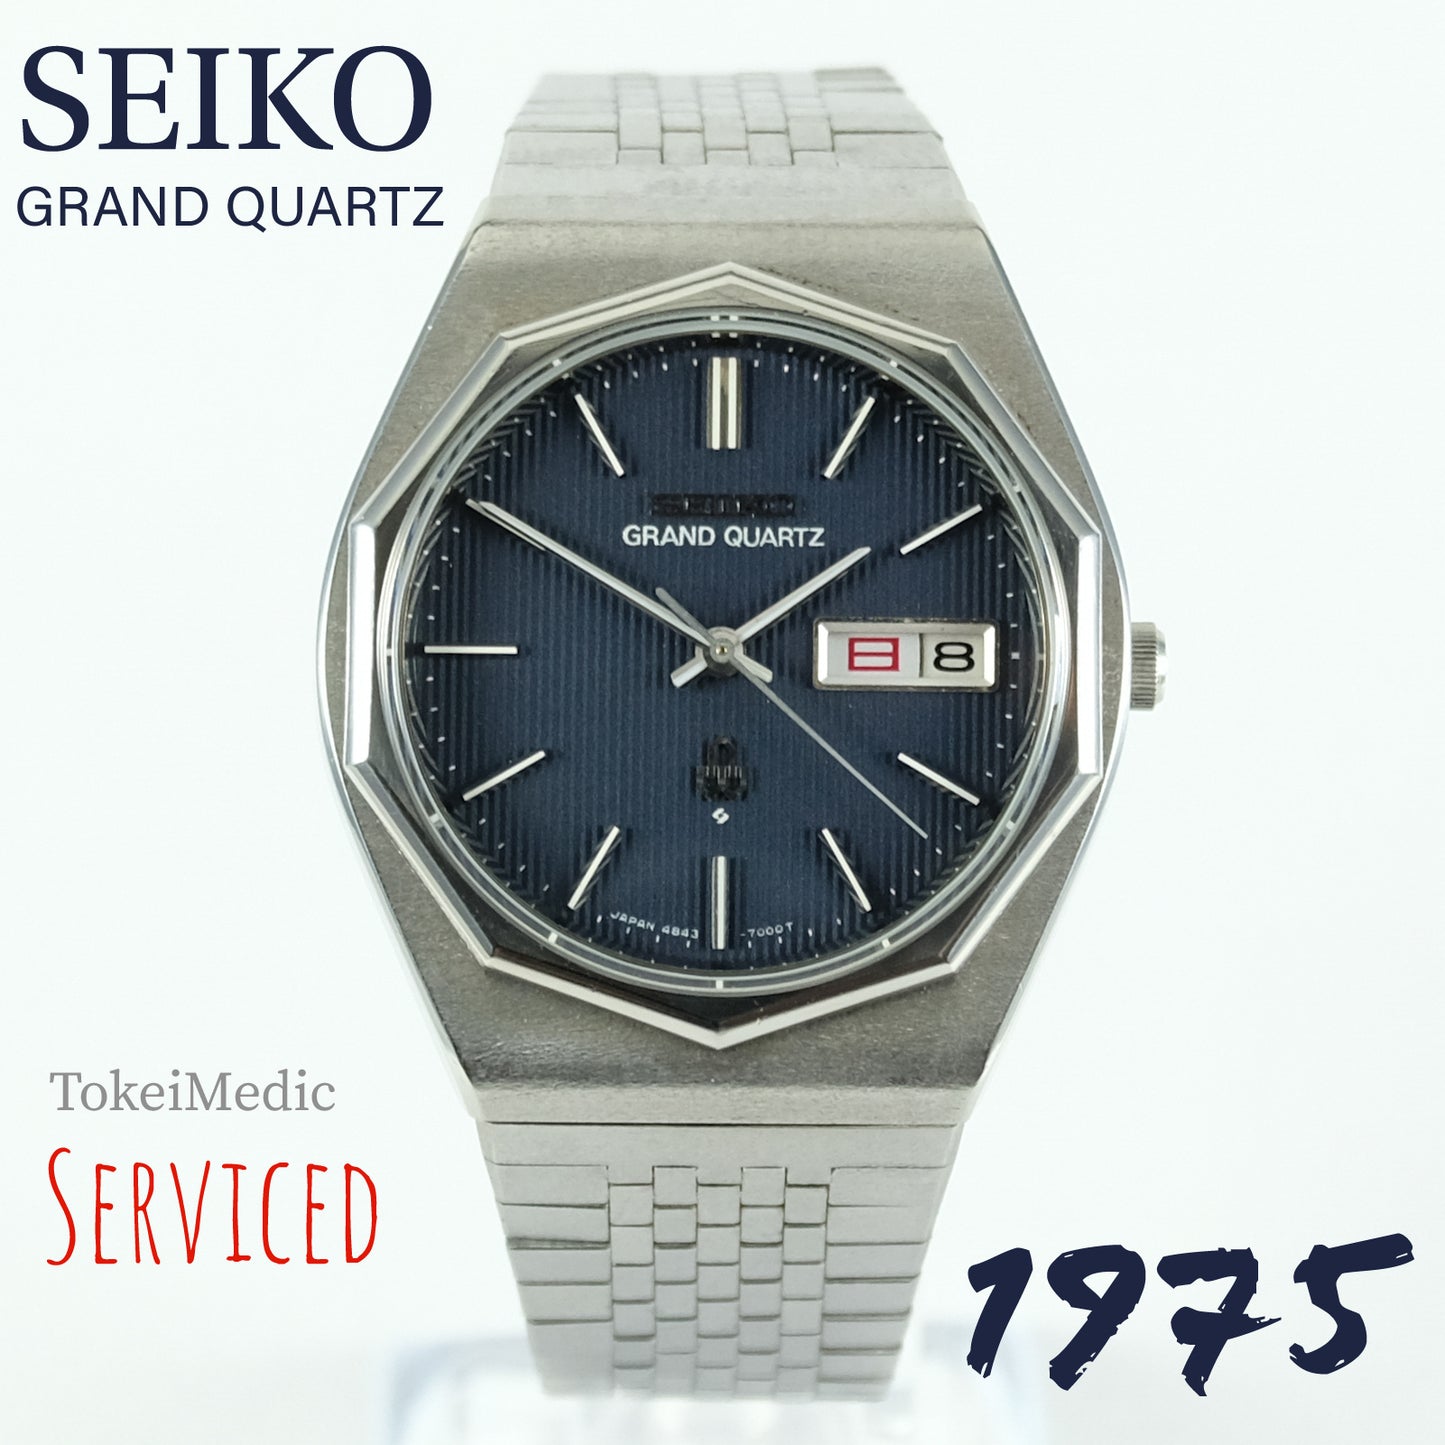 1975 Seiko Grand Quartz 4843-7000